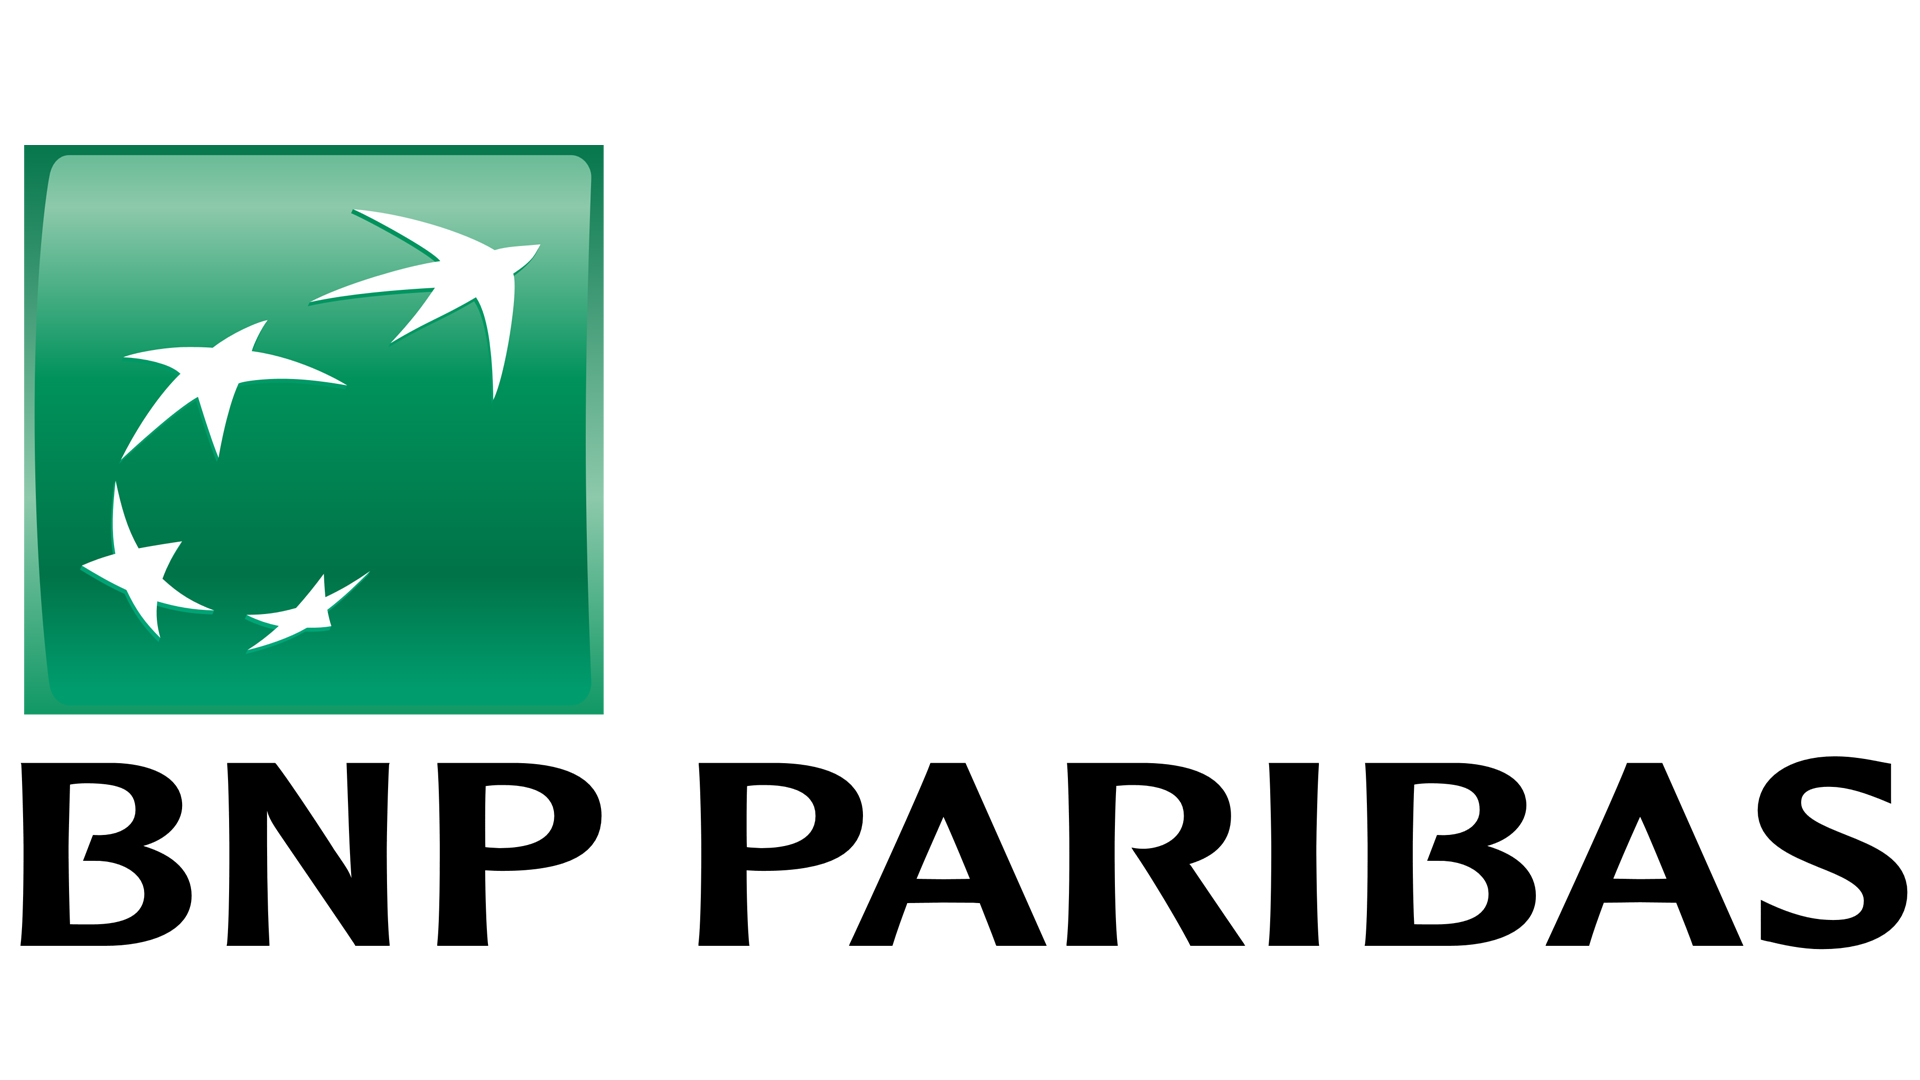 BNP Paribas infolinia | Telefon, adres, informacje dodatkowe, kontakt, numer